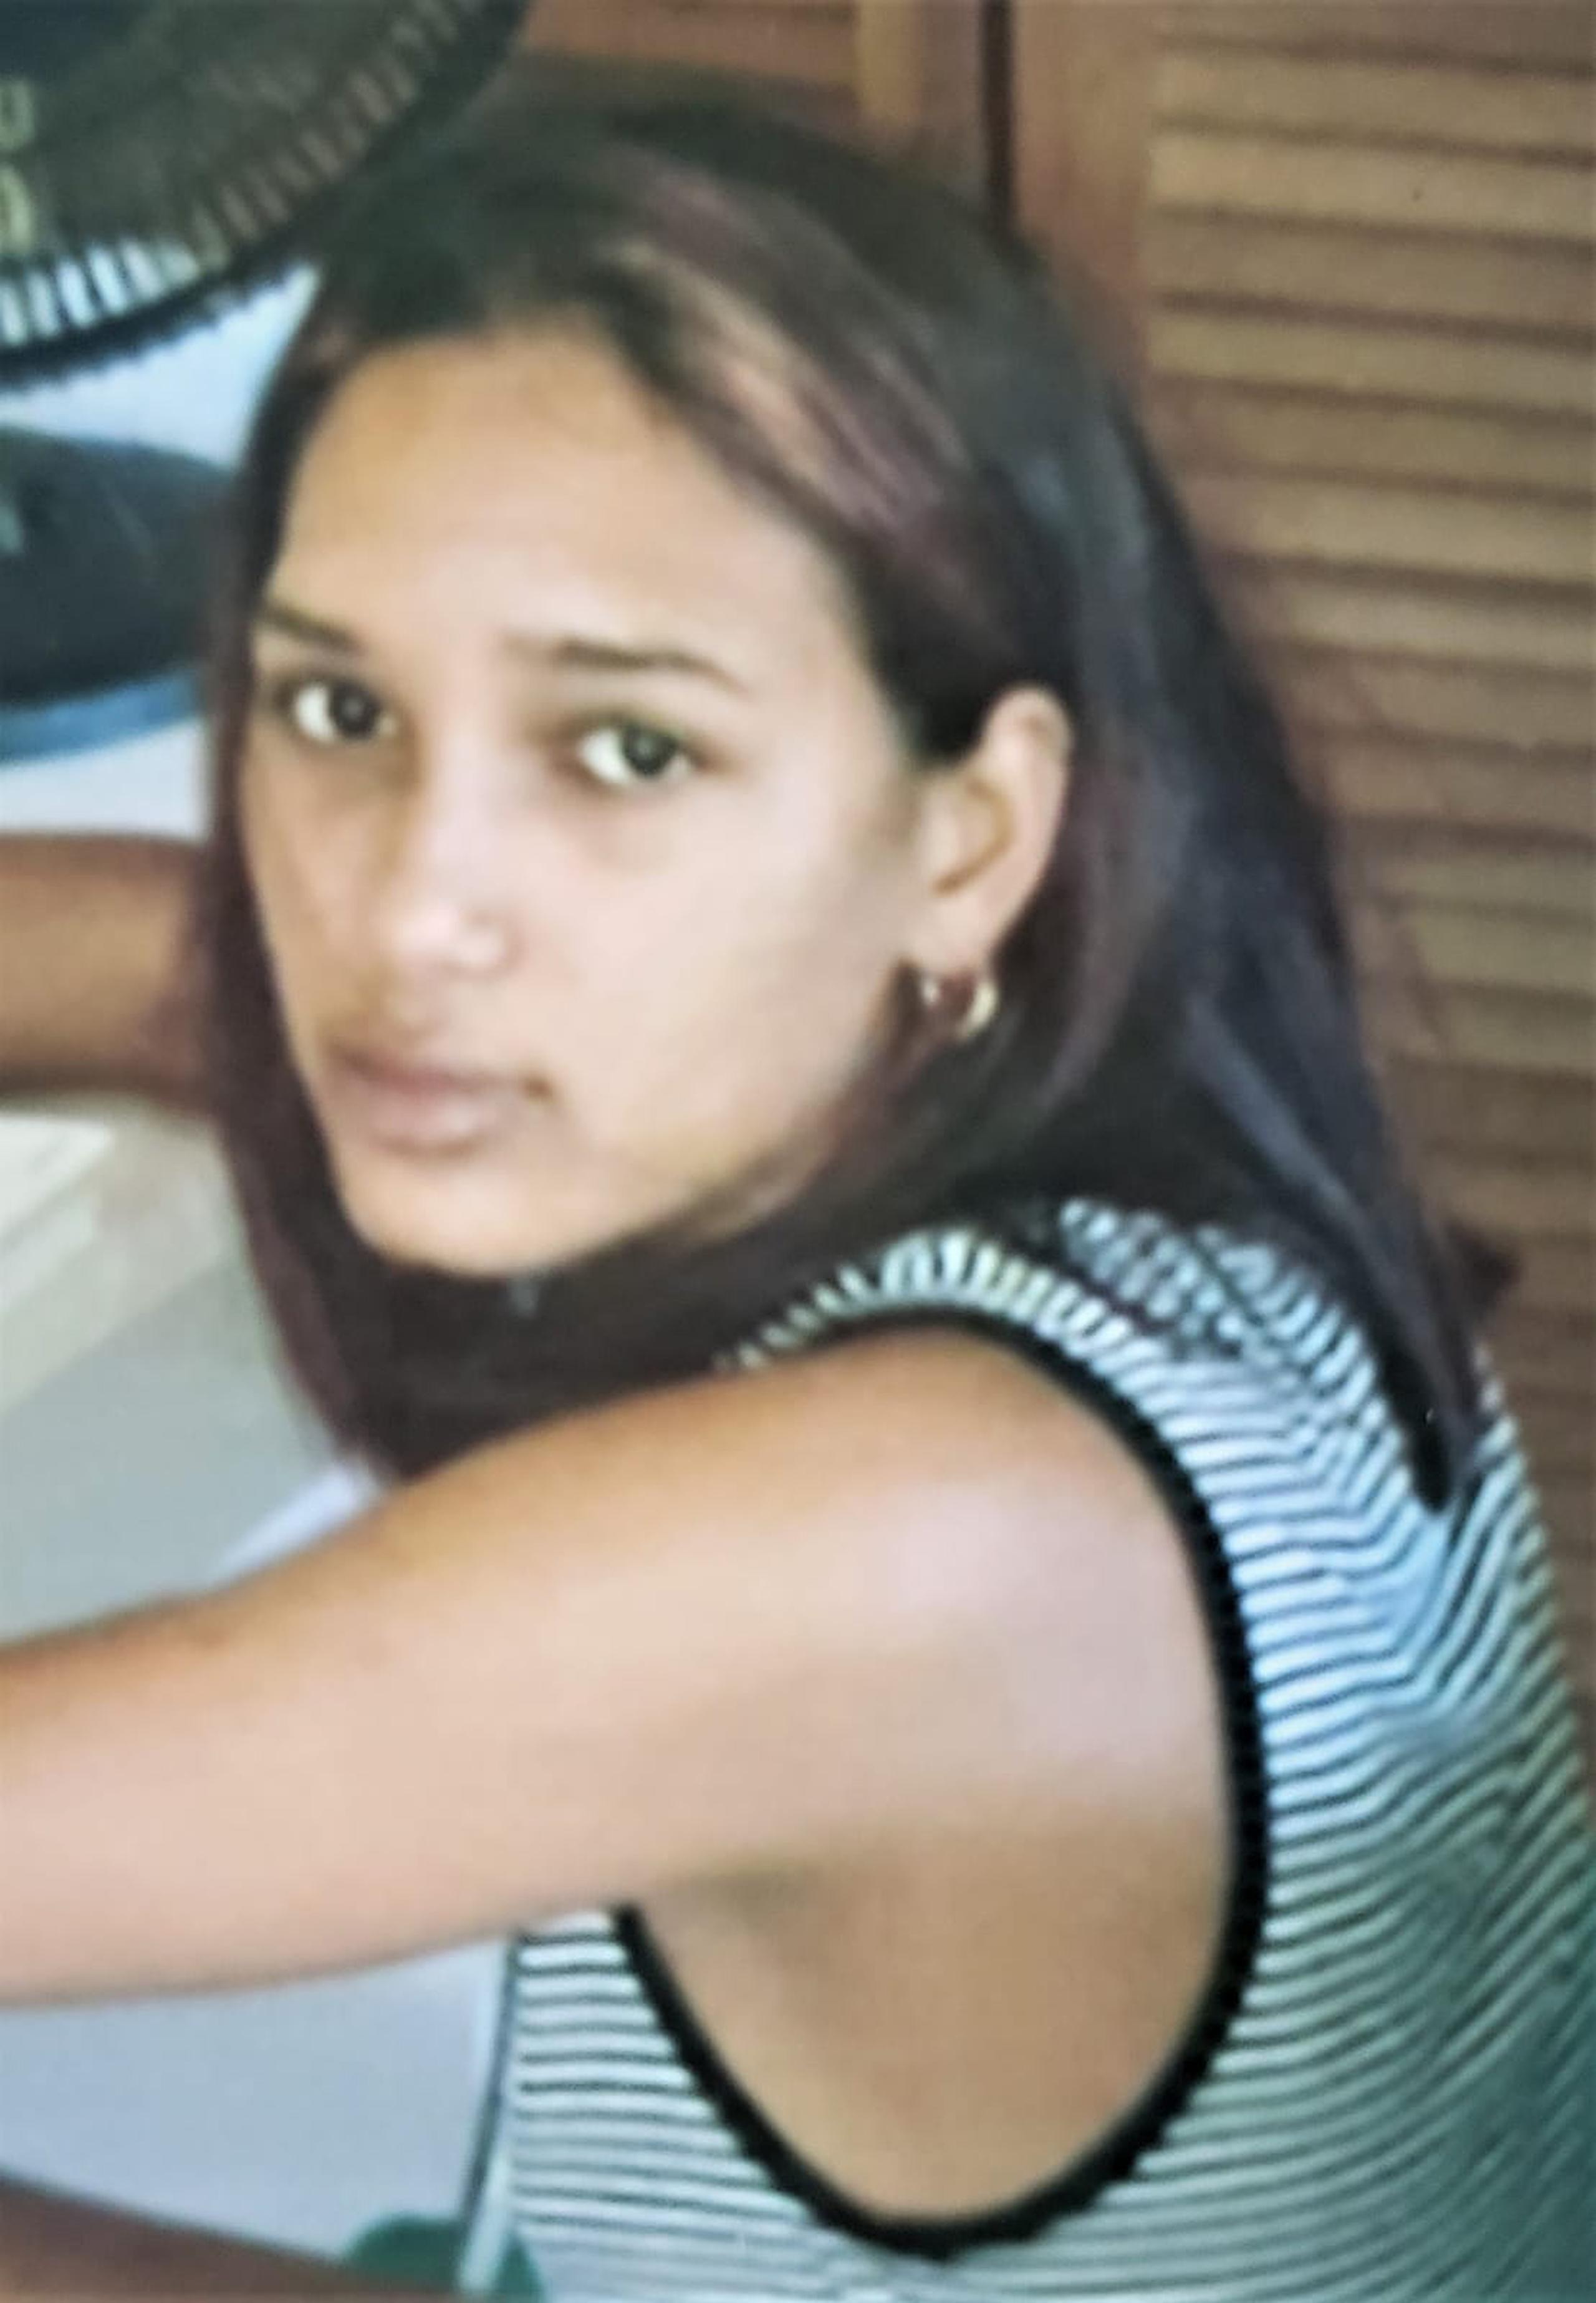 Las autoridades buscan a Lidia N. Reyes García de 16 años, quien fue reportada como desaparecida desde el sábado pasado cuando fue vista por última vez en el barrio Aguacate, en Yabucoa.